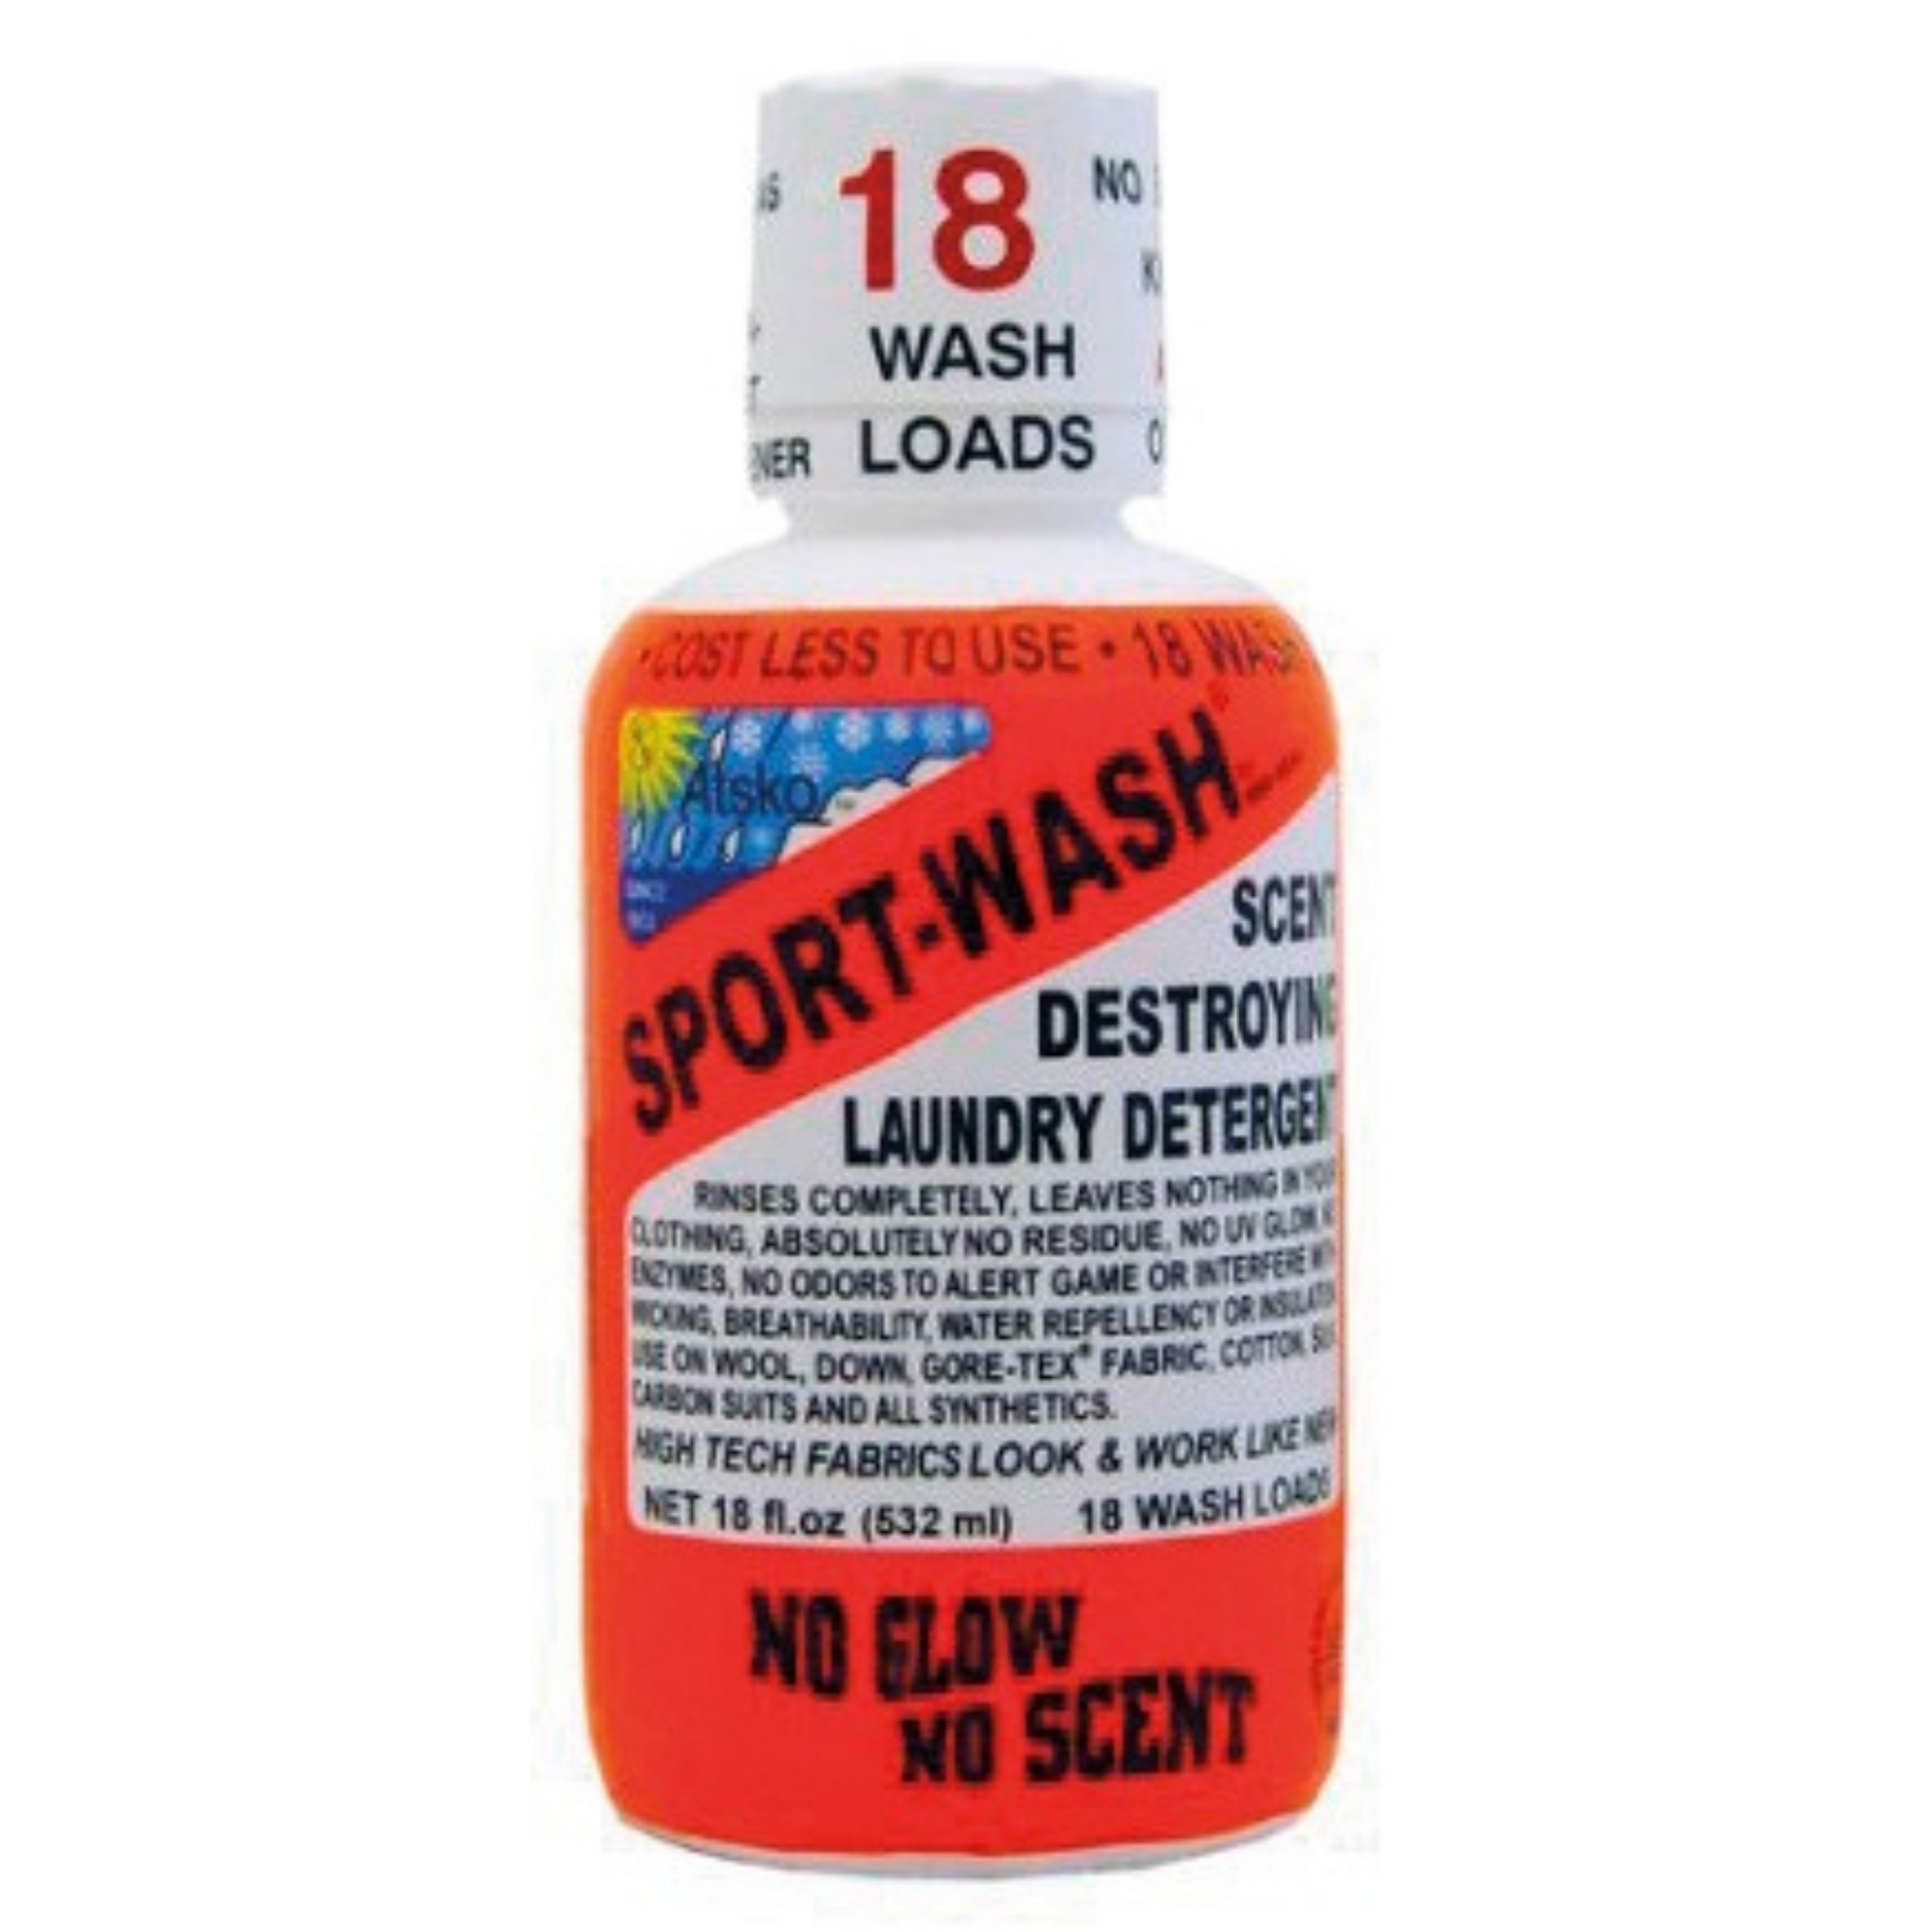 Sport-wash laundry detergent